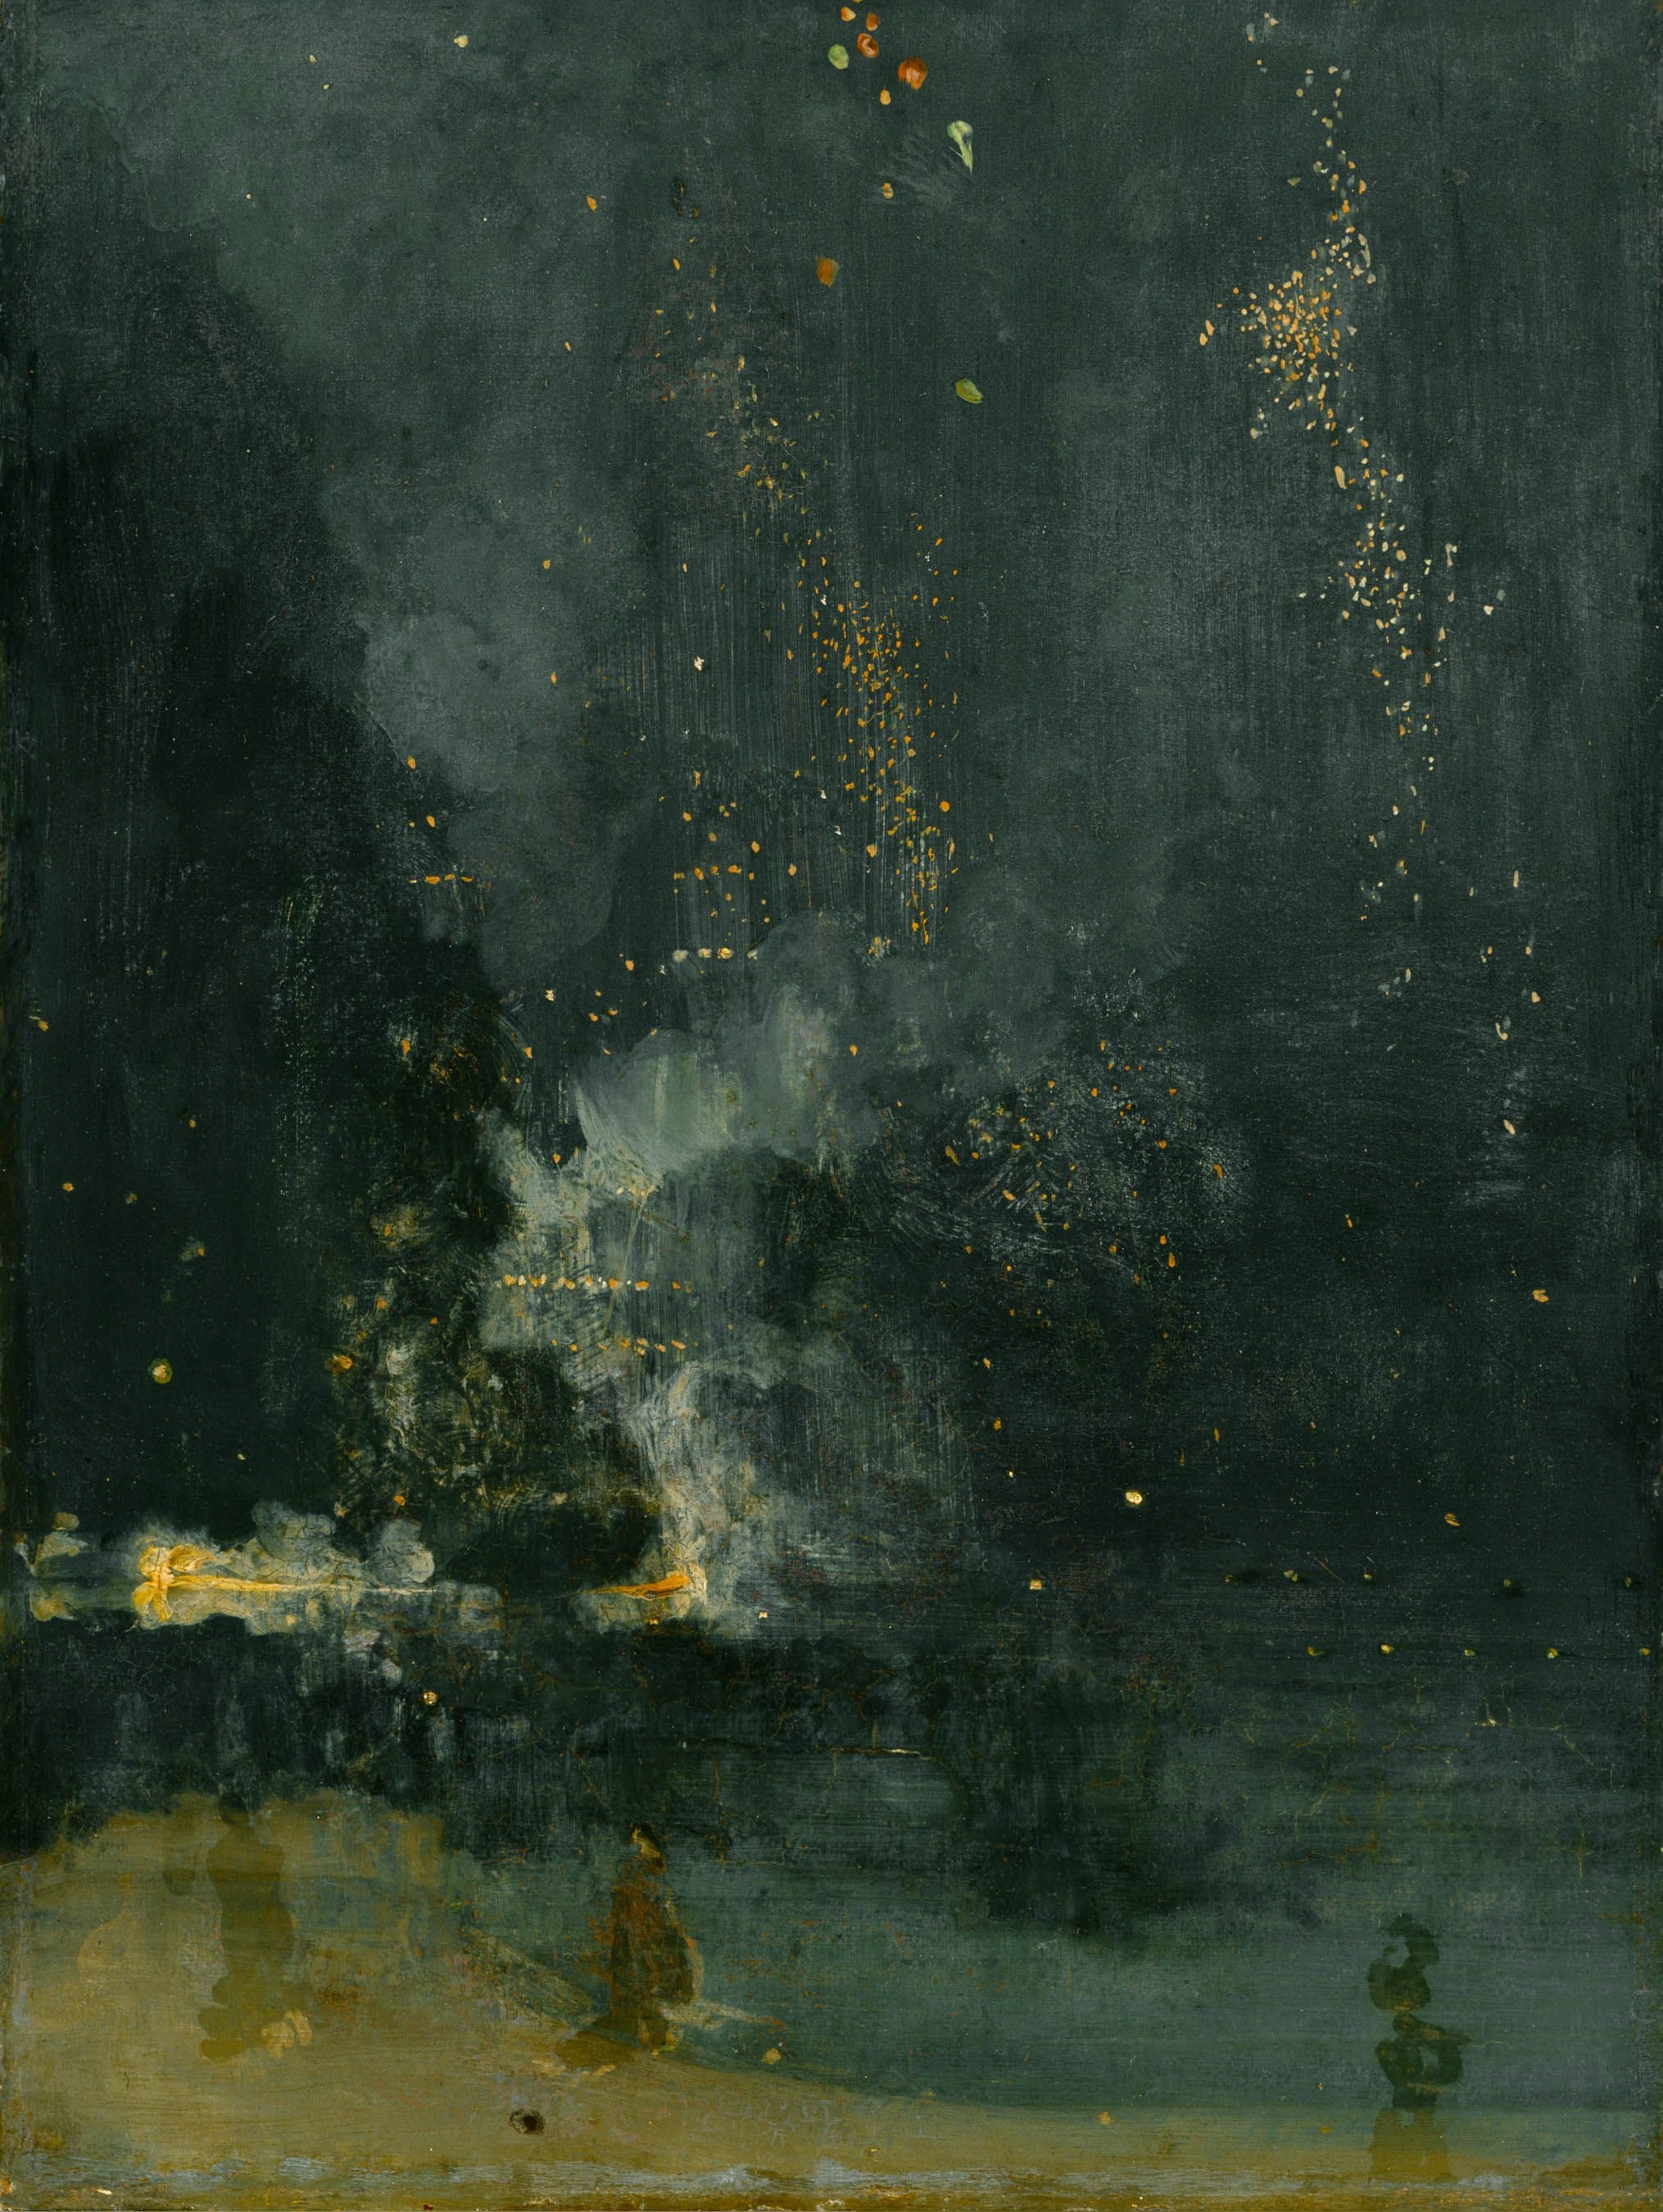 Nocturne in Schwarz und Gold by James Abbott McNeill Whistler - circa 1872–77 - 60,3 × 46,6 cm Detroit Institute of Arts